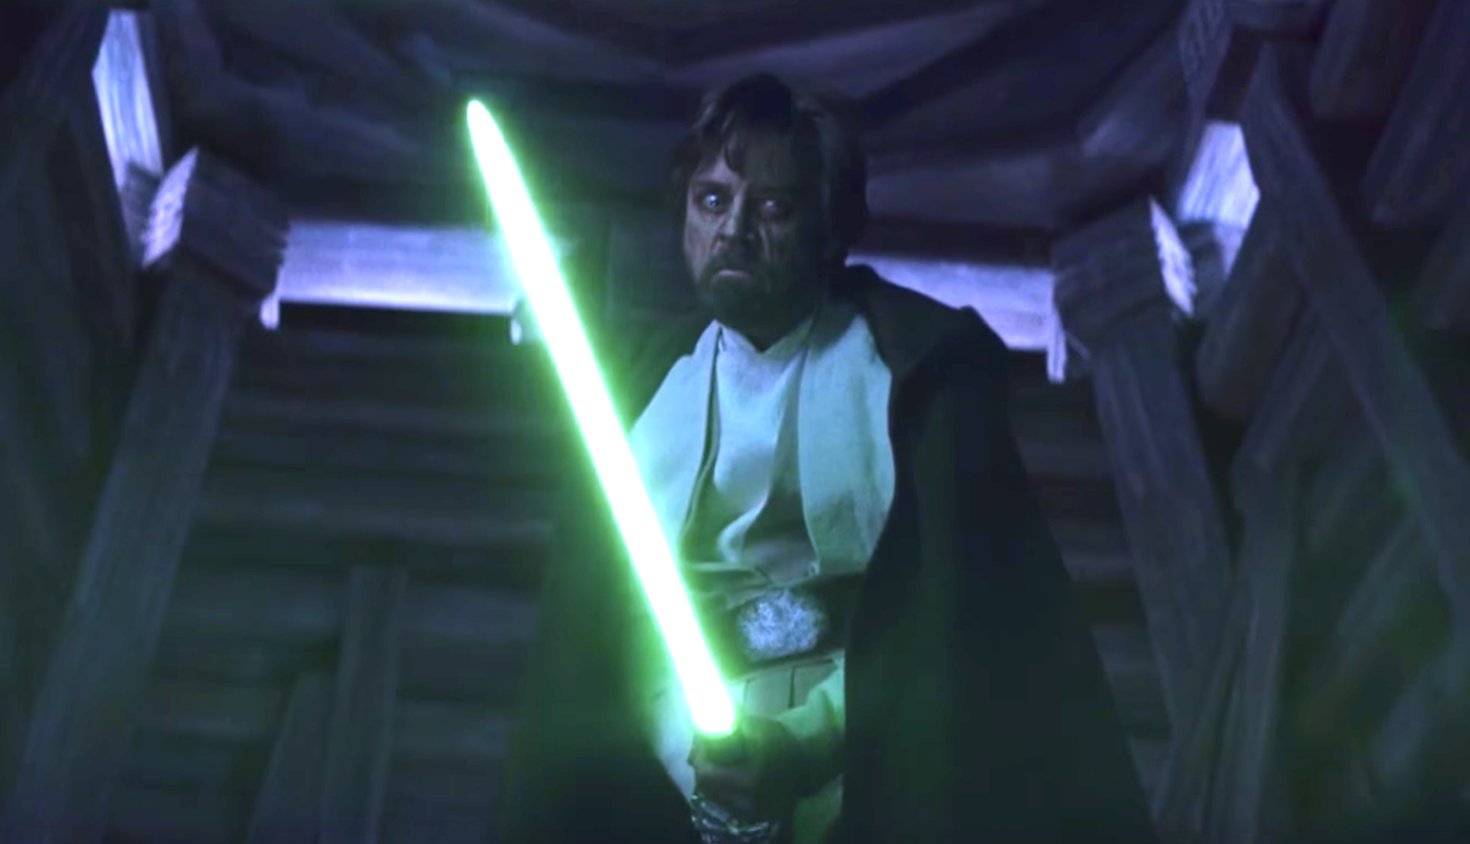 Star Wars this where Luke Skywalker's green lightsaber is?